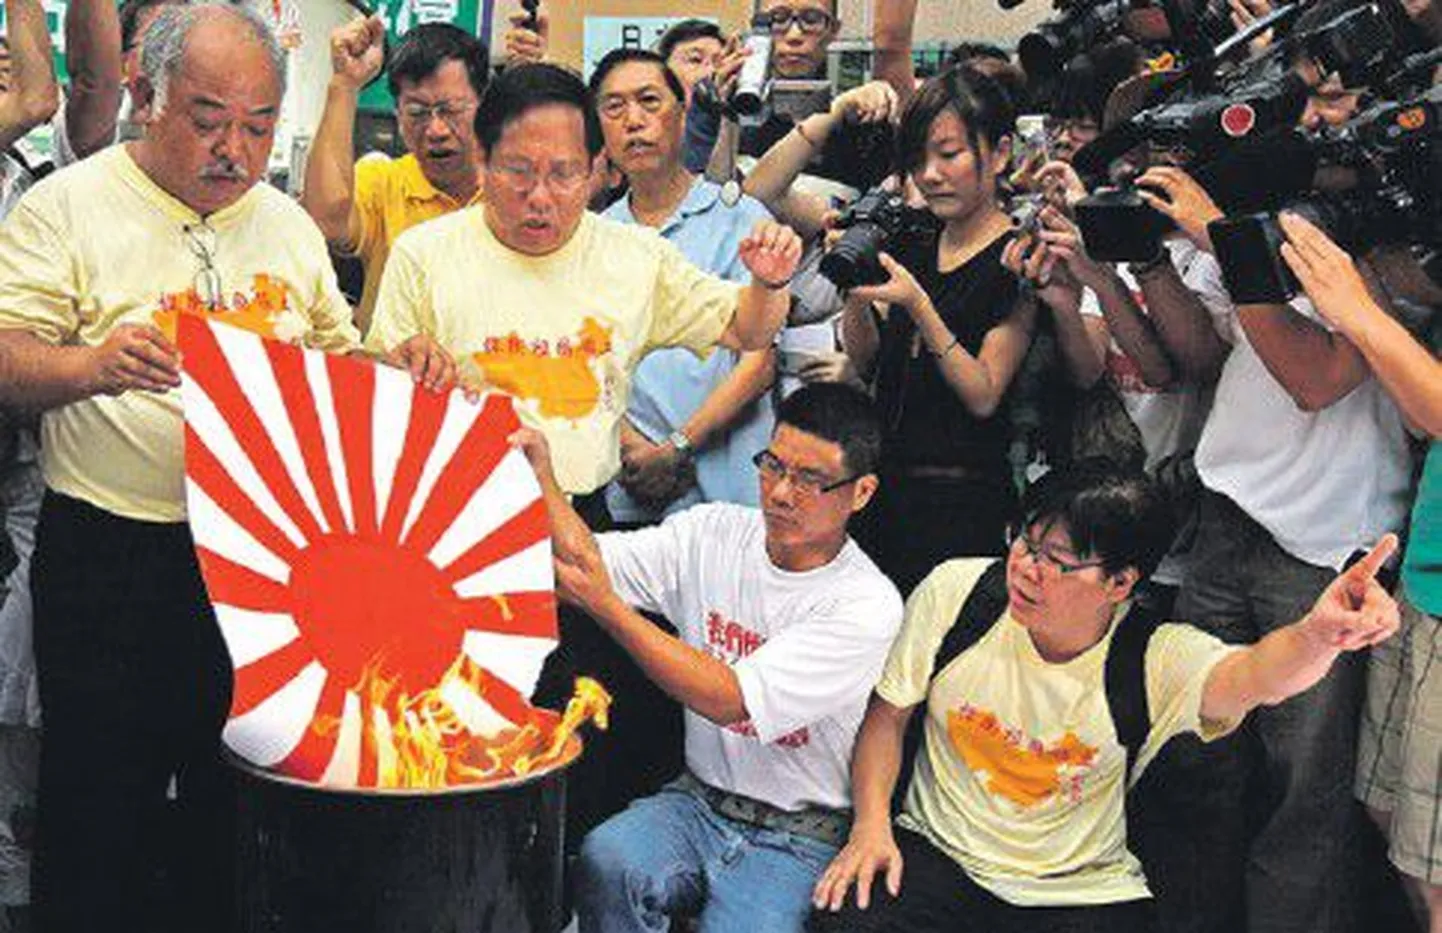 Во многих уголках Китая прошли антияпонские выступления, во время которых жгли японские флаги времен войны.